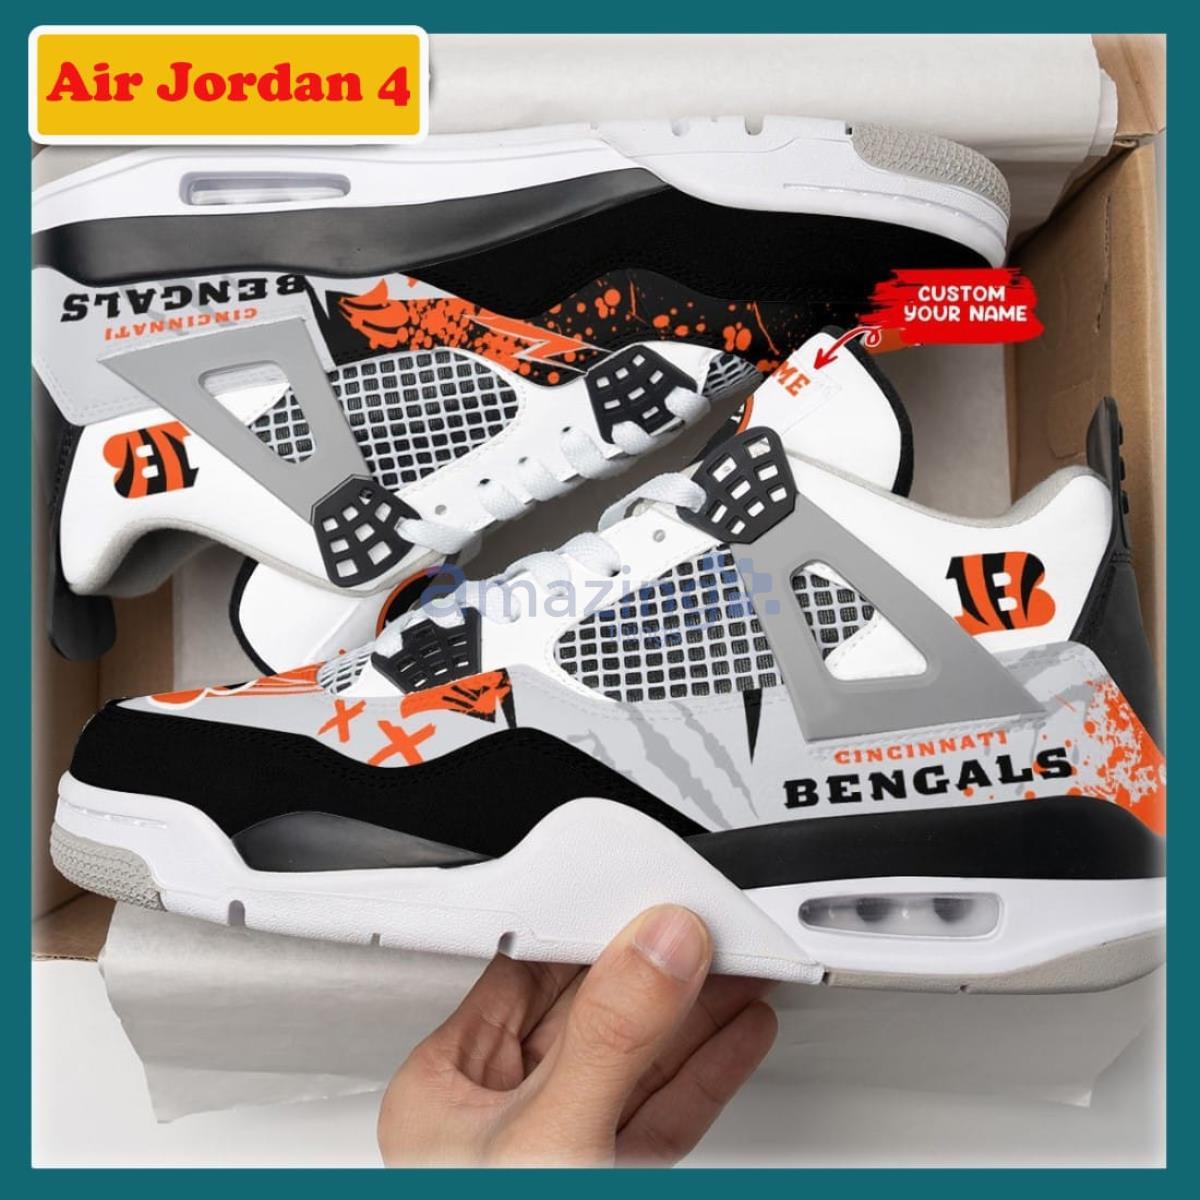 Cincinnati Bengals Ink Splash Air Jordan 4 Custom Name Shoes